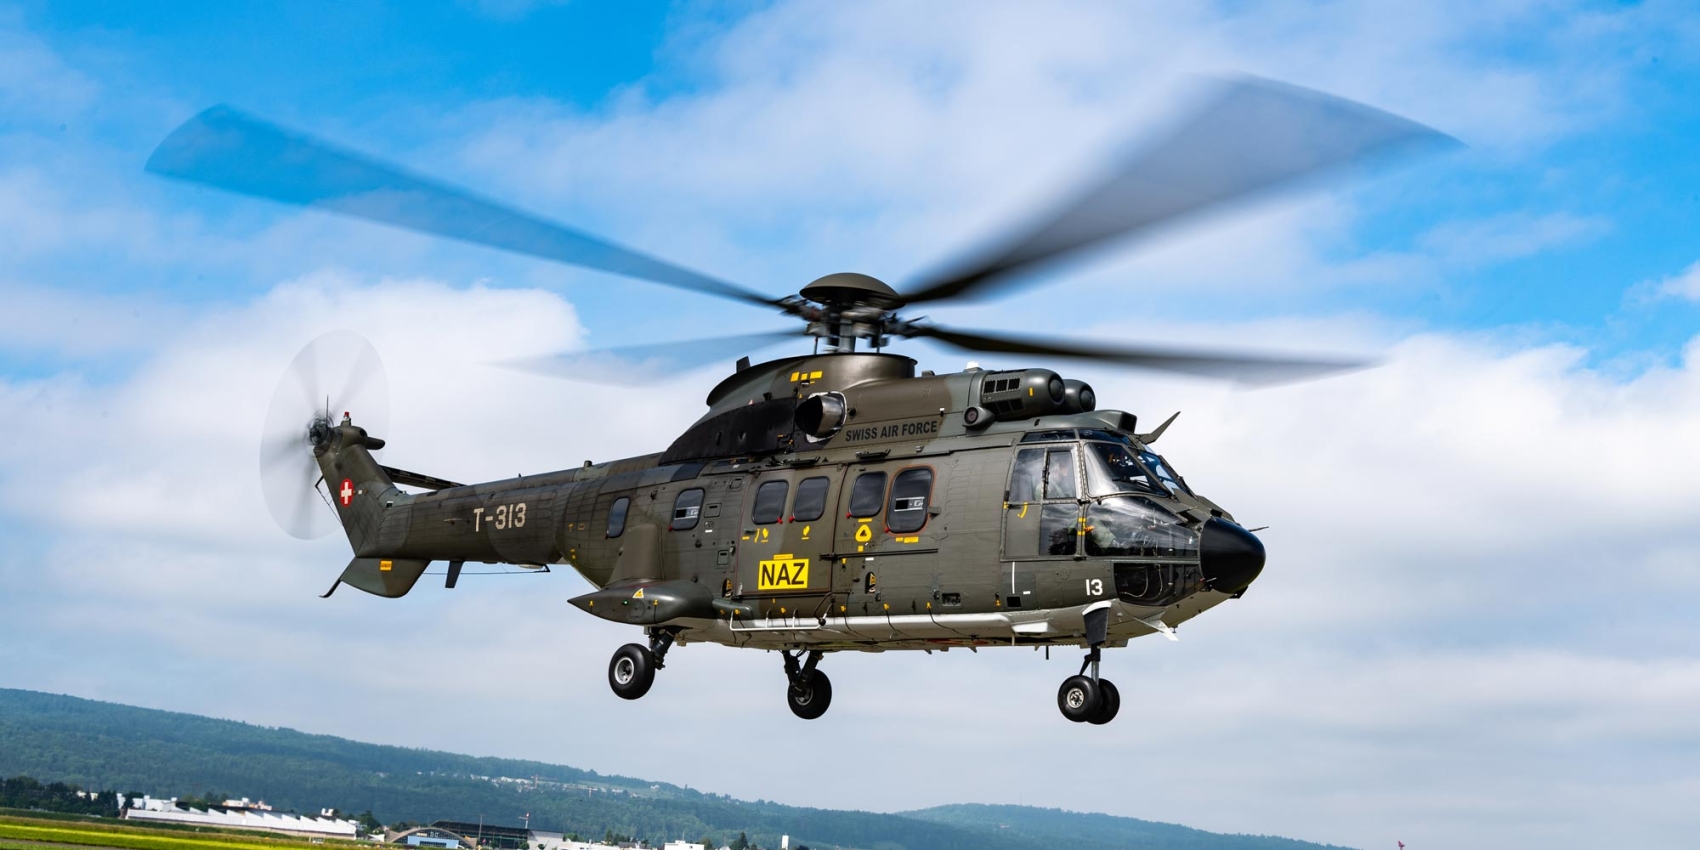 Super-Puma-Helikopter der Schweizer Armee startet zu Messflug